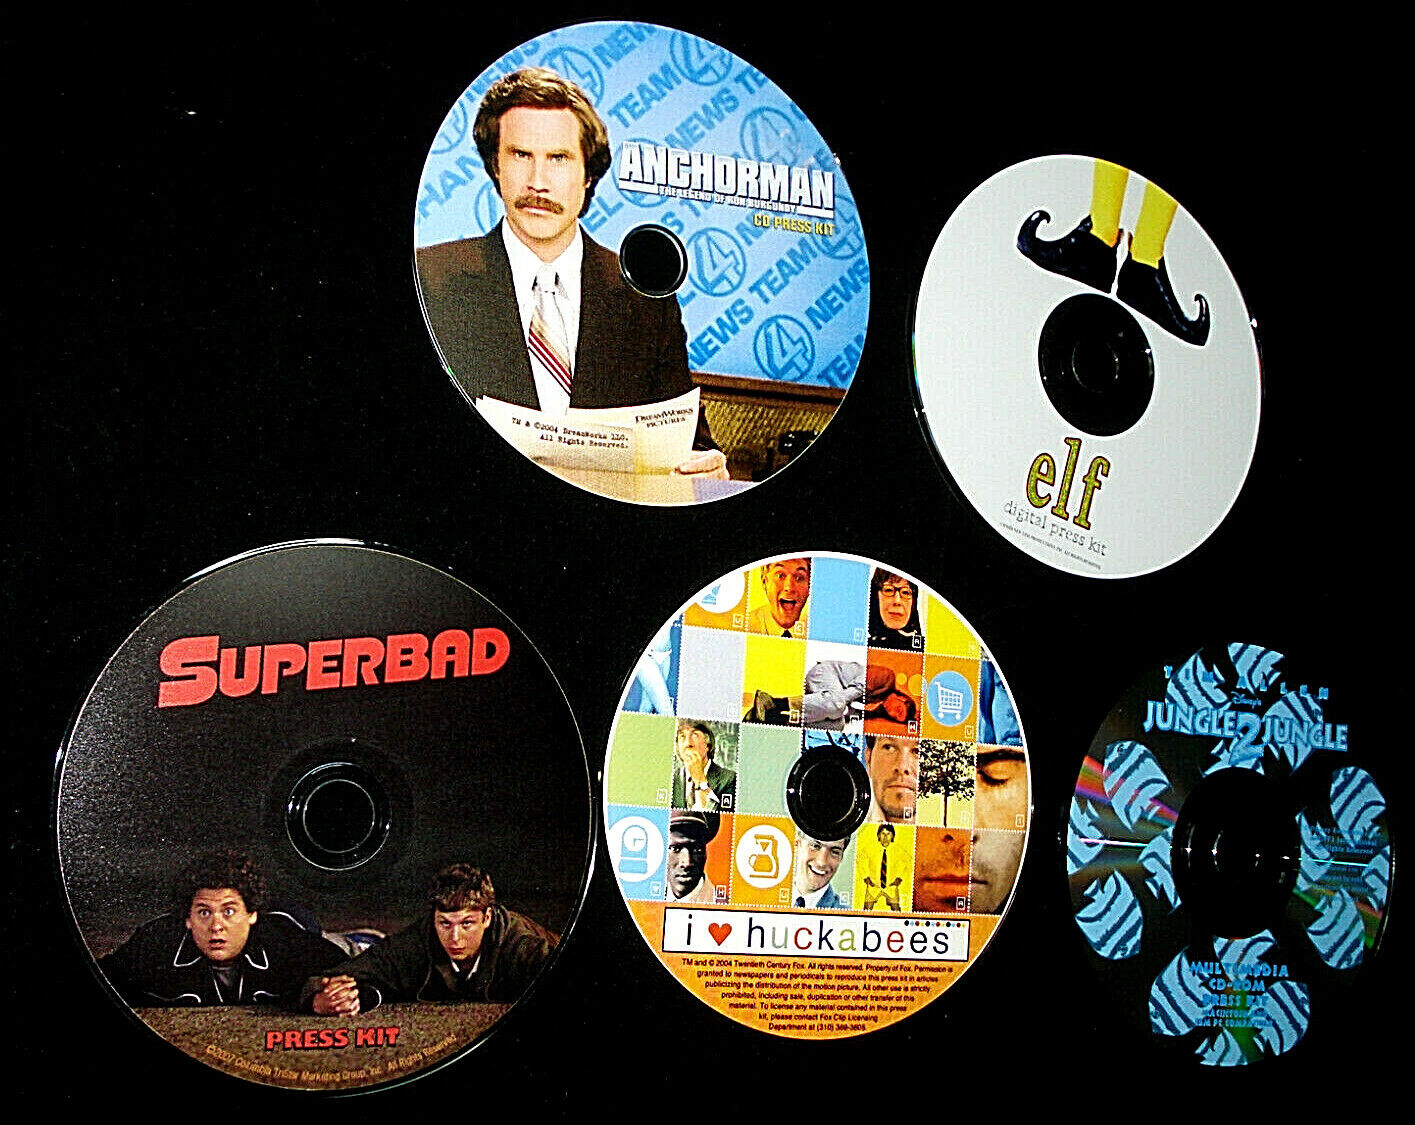 Lot Of 5 Digital PressKits -CD Photos- ANCHORMAN, SUPERBAD, ELF, HUCKABEES, J2J Без бренда